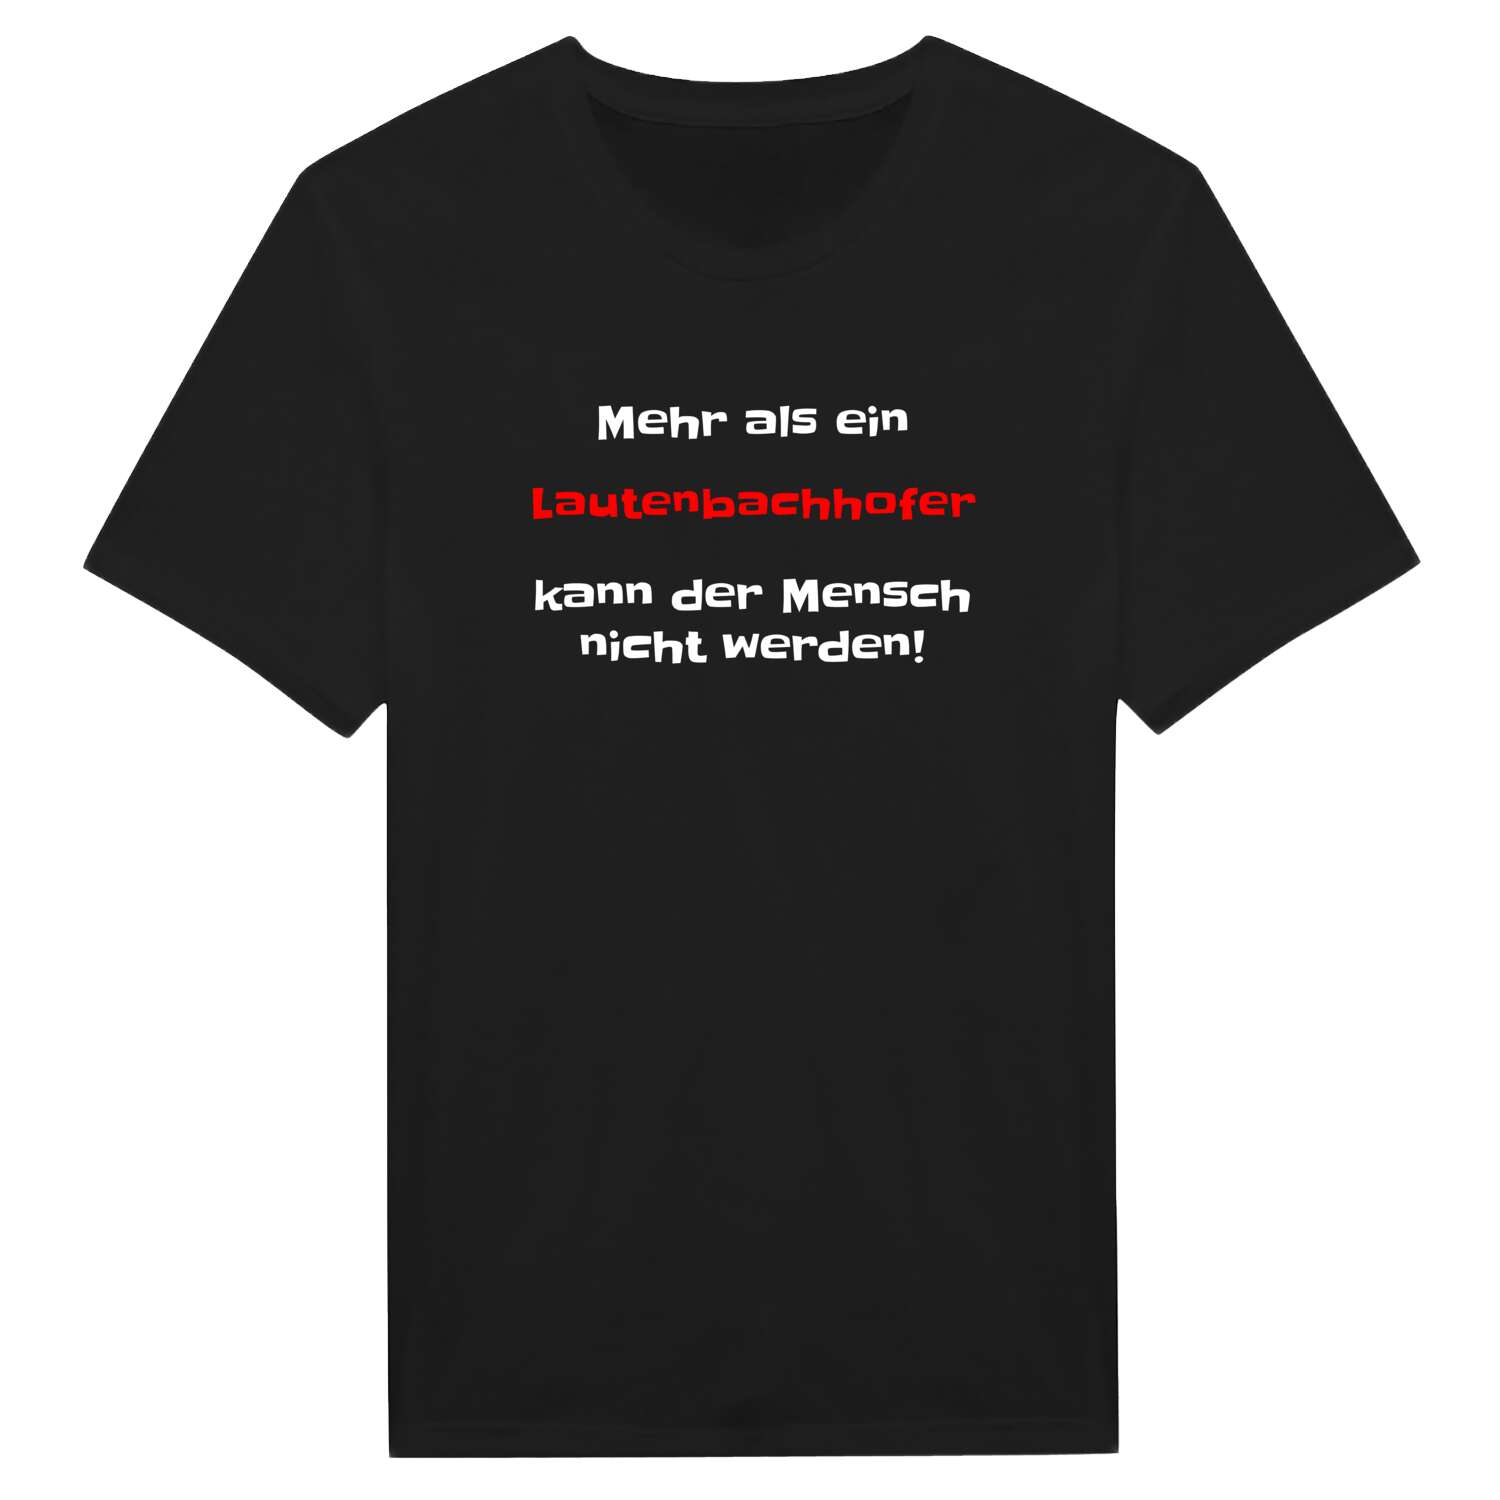 Lautenbachhof T-Shirt »Mehr als ein«